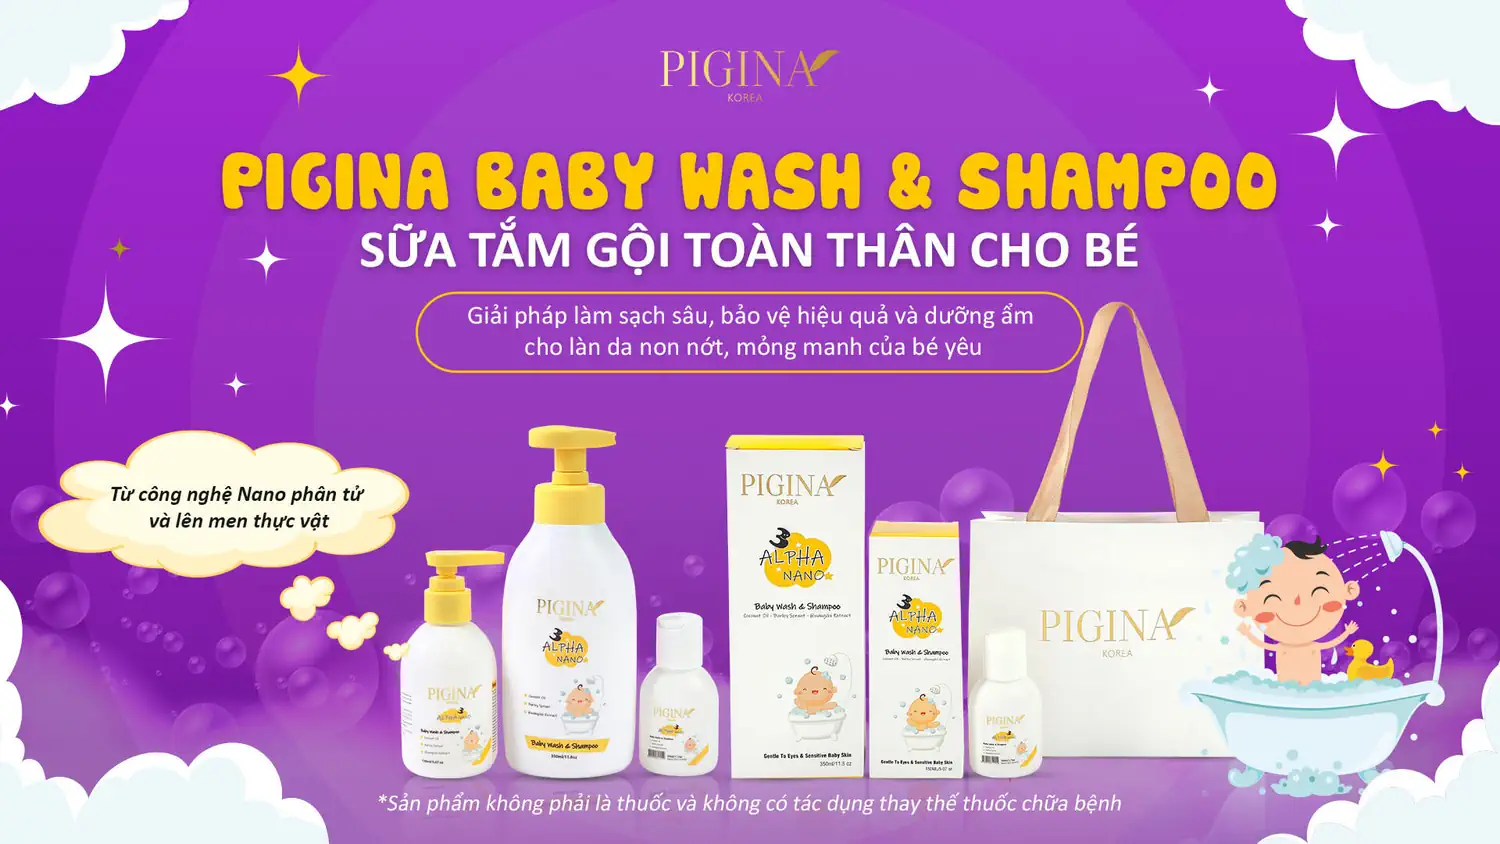 Thương hiệu Pigina - sản phẩm chăm sóc toàn diện sức khỏe và sắc đẹp khu vực nhạy cảm của phái nữ và làn da non nớt của trẻ em - Droppii